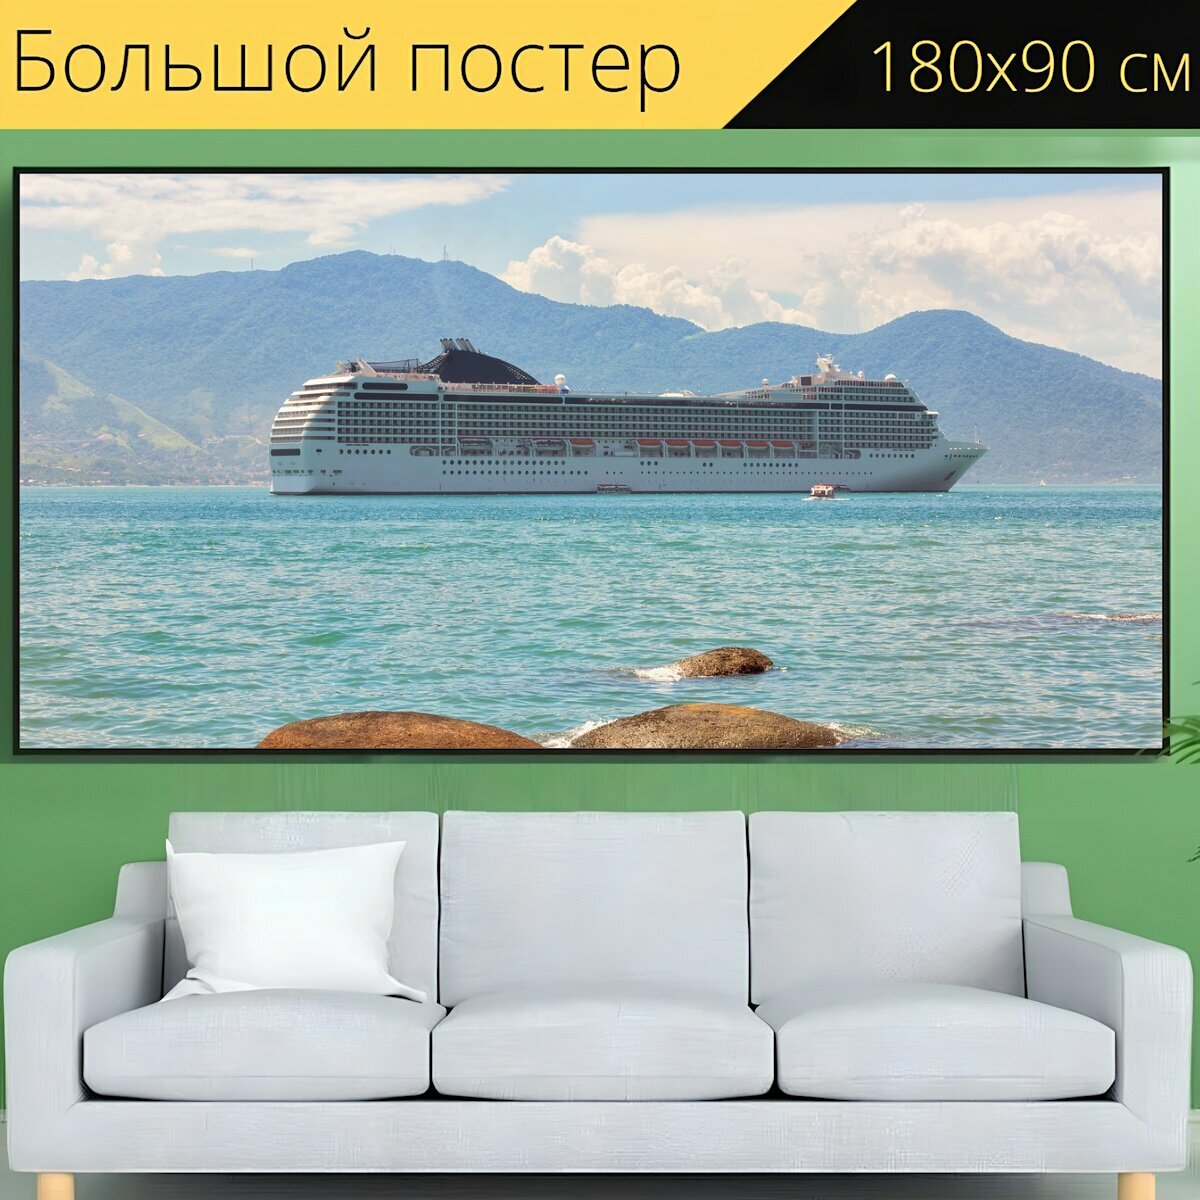 Большой постер "Круизное судно, круиз, судно" 180 x 90 см. для интерьера